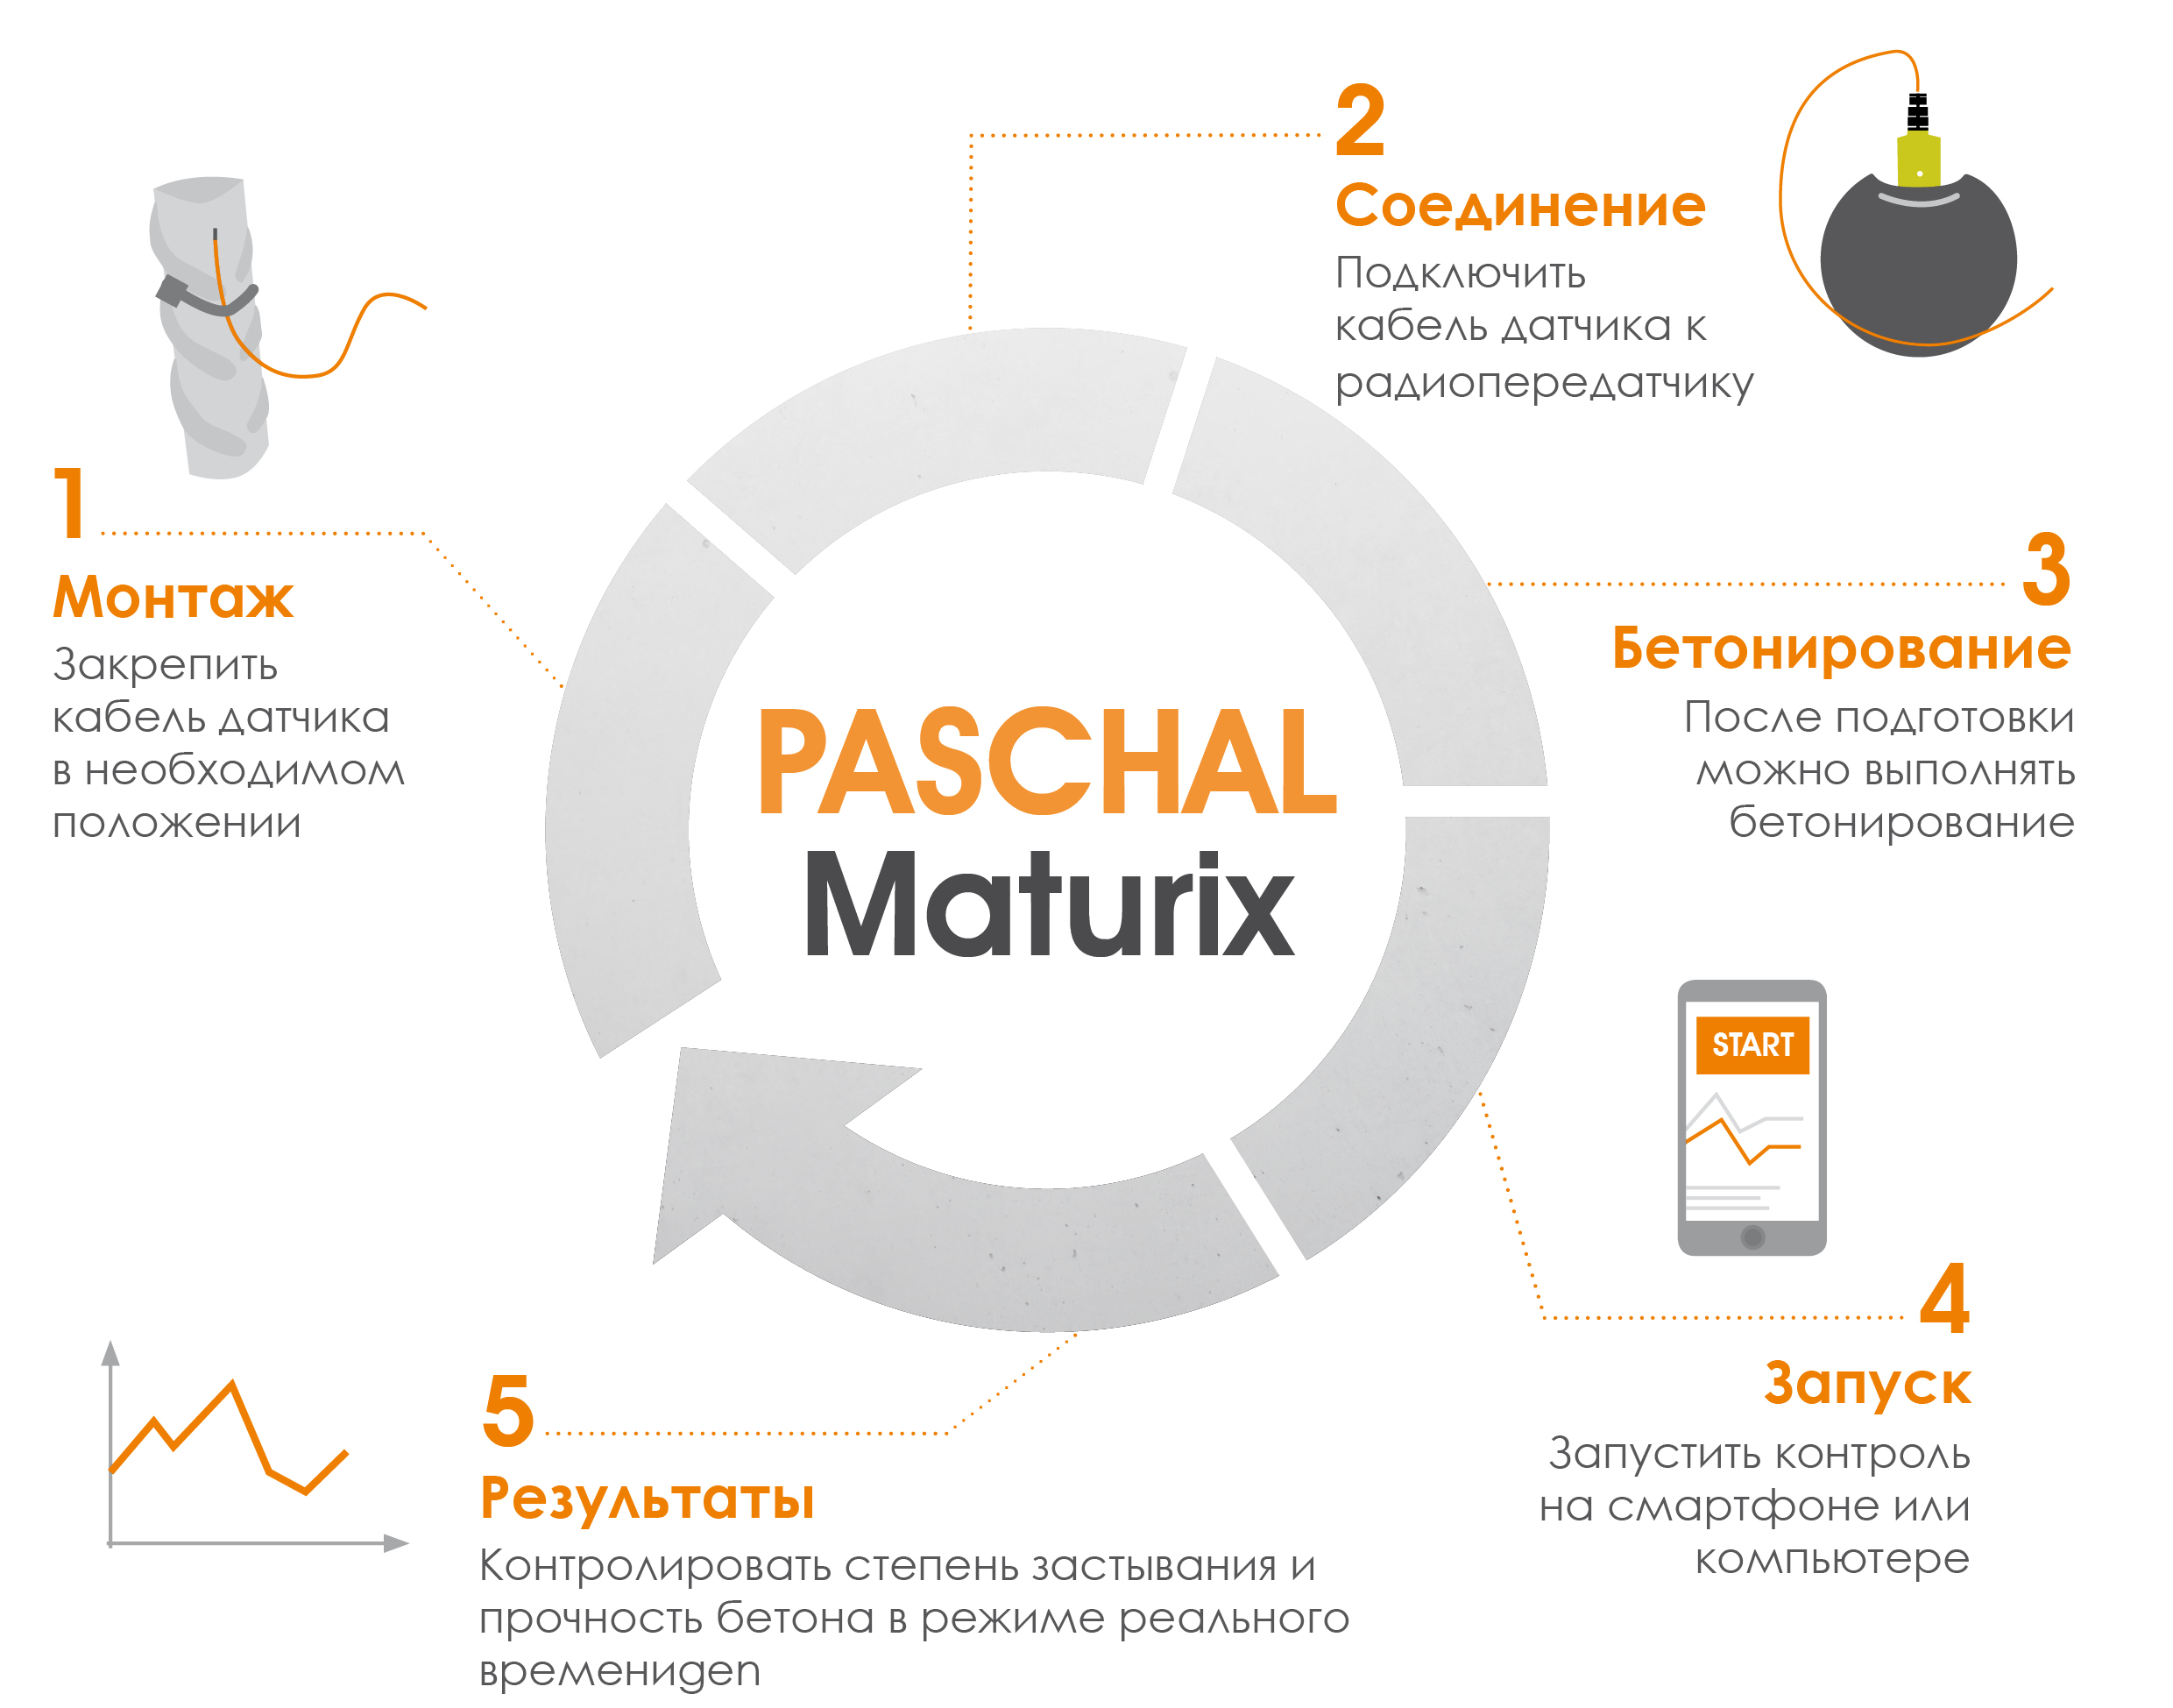 Принцип действия PASCHAL Maturix